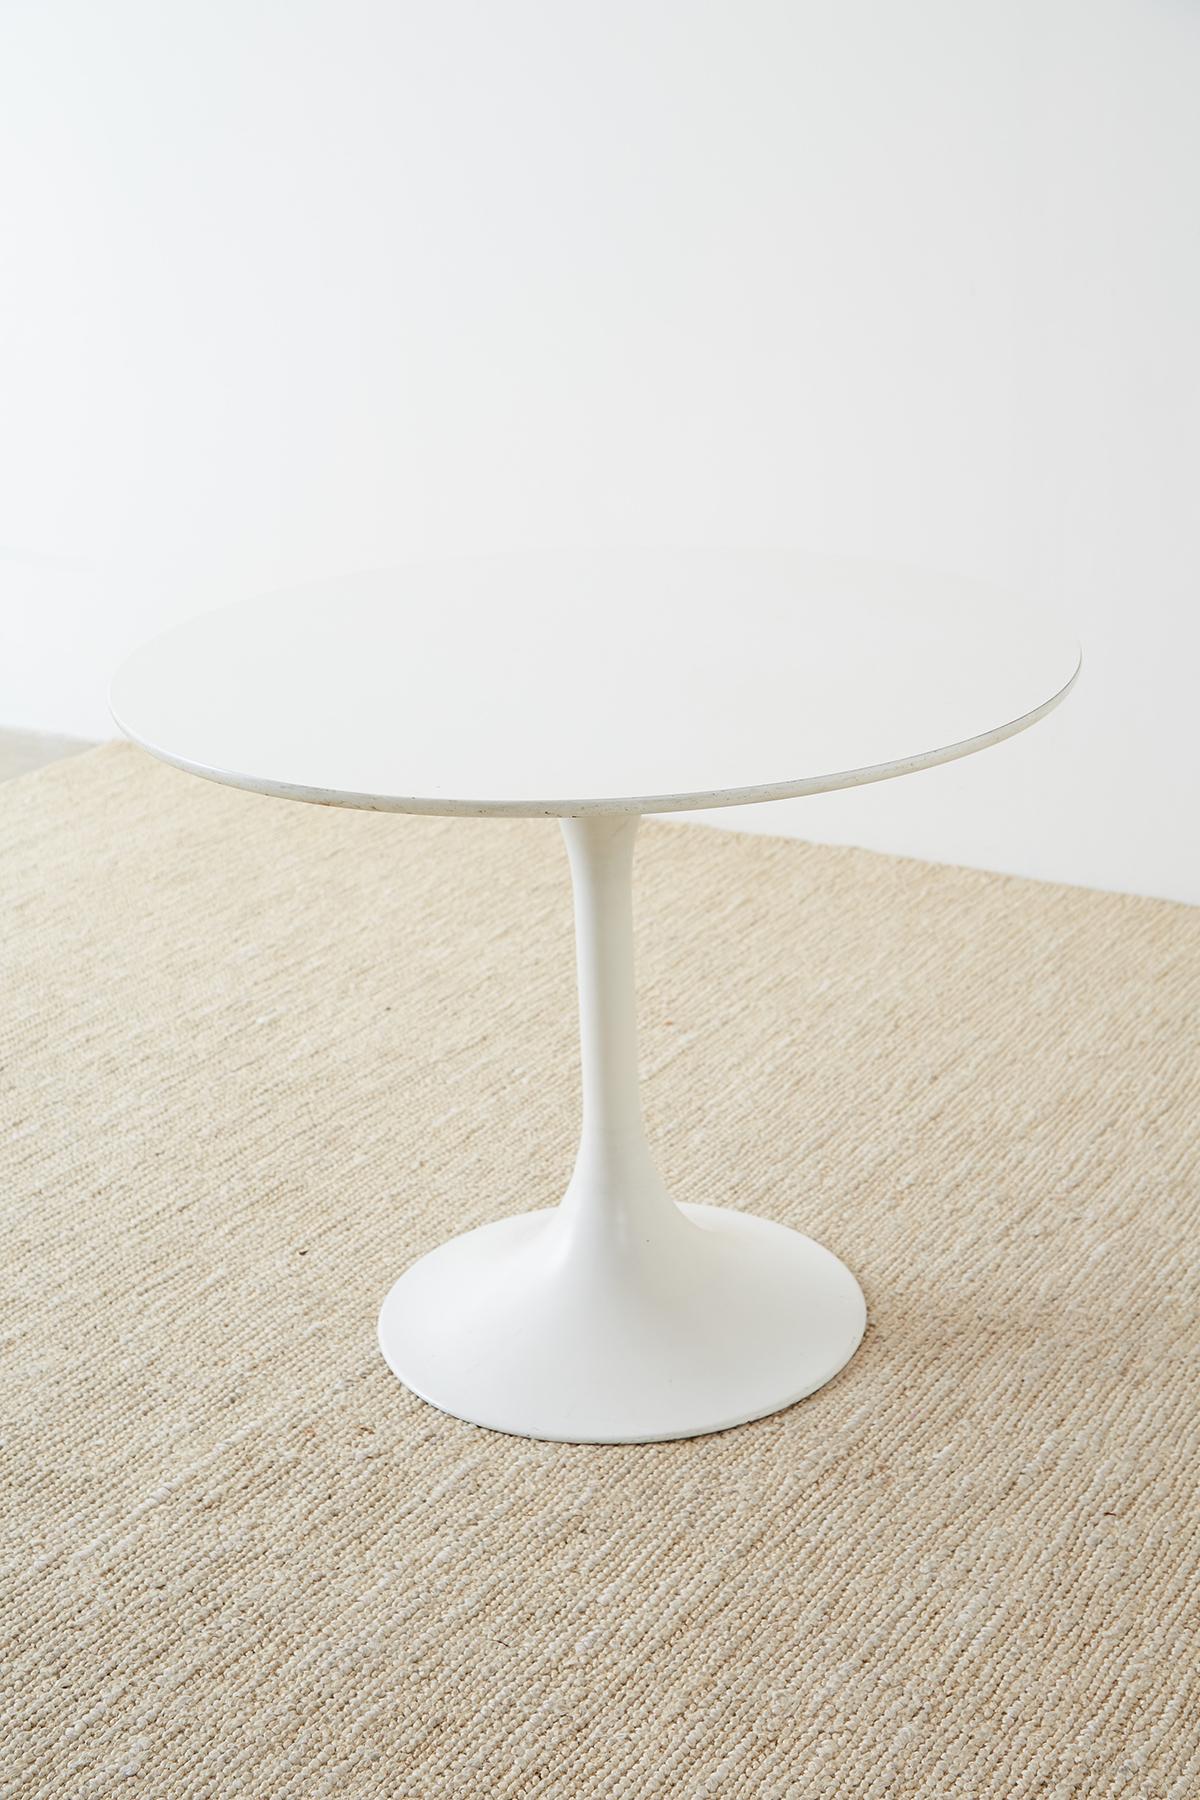 20th Century Midcentury Eero Saarinen Style White Tulip Table